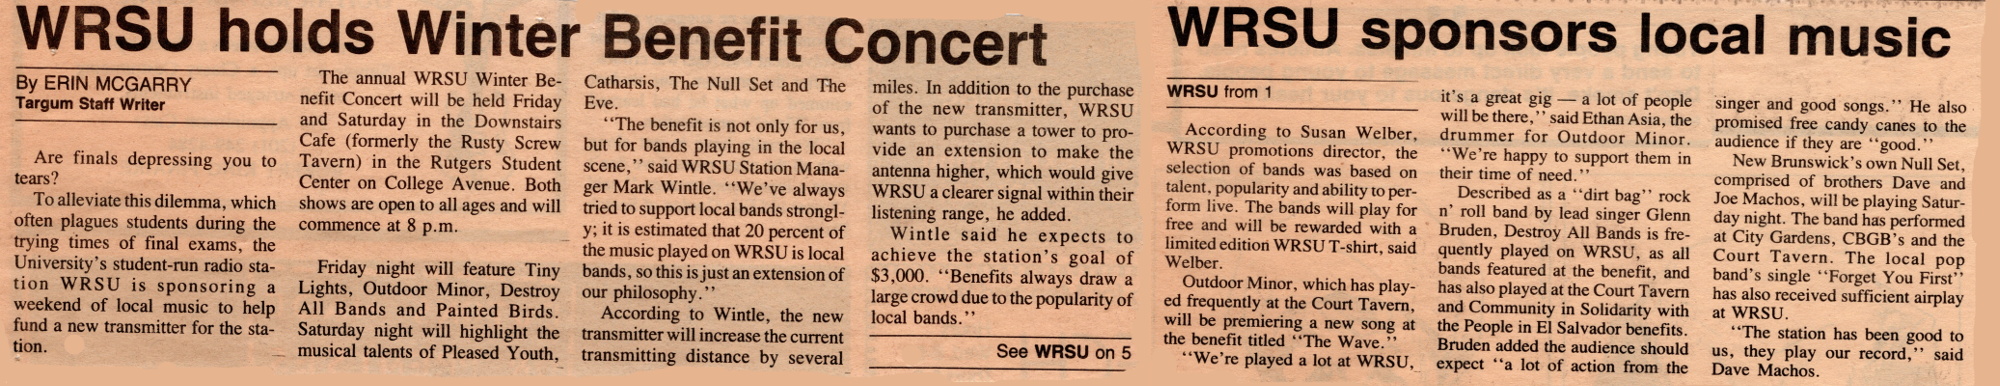 1985 Benefits Concerts - Always in Need of Money....